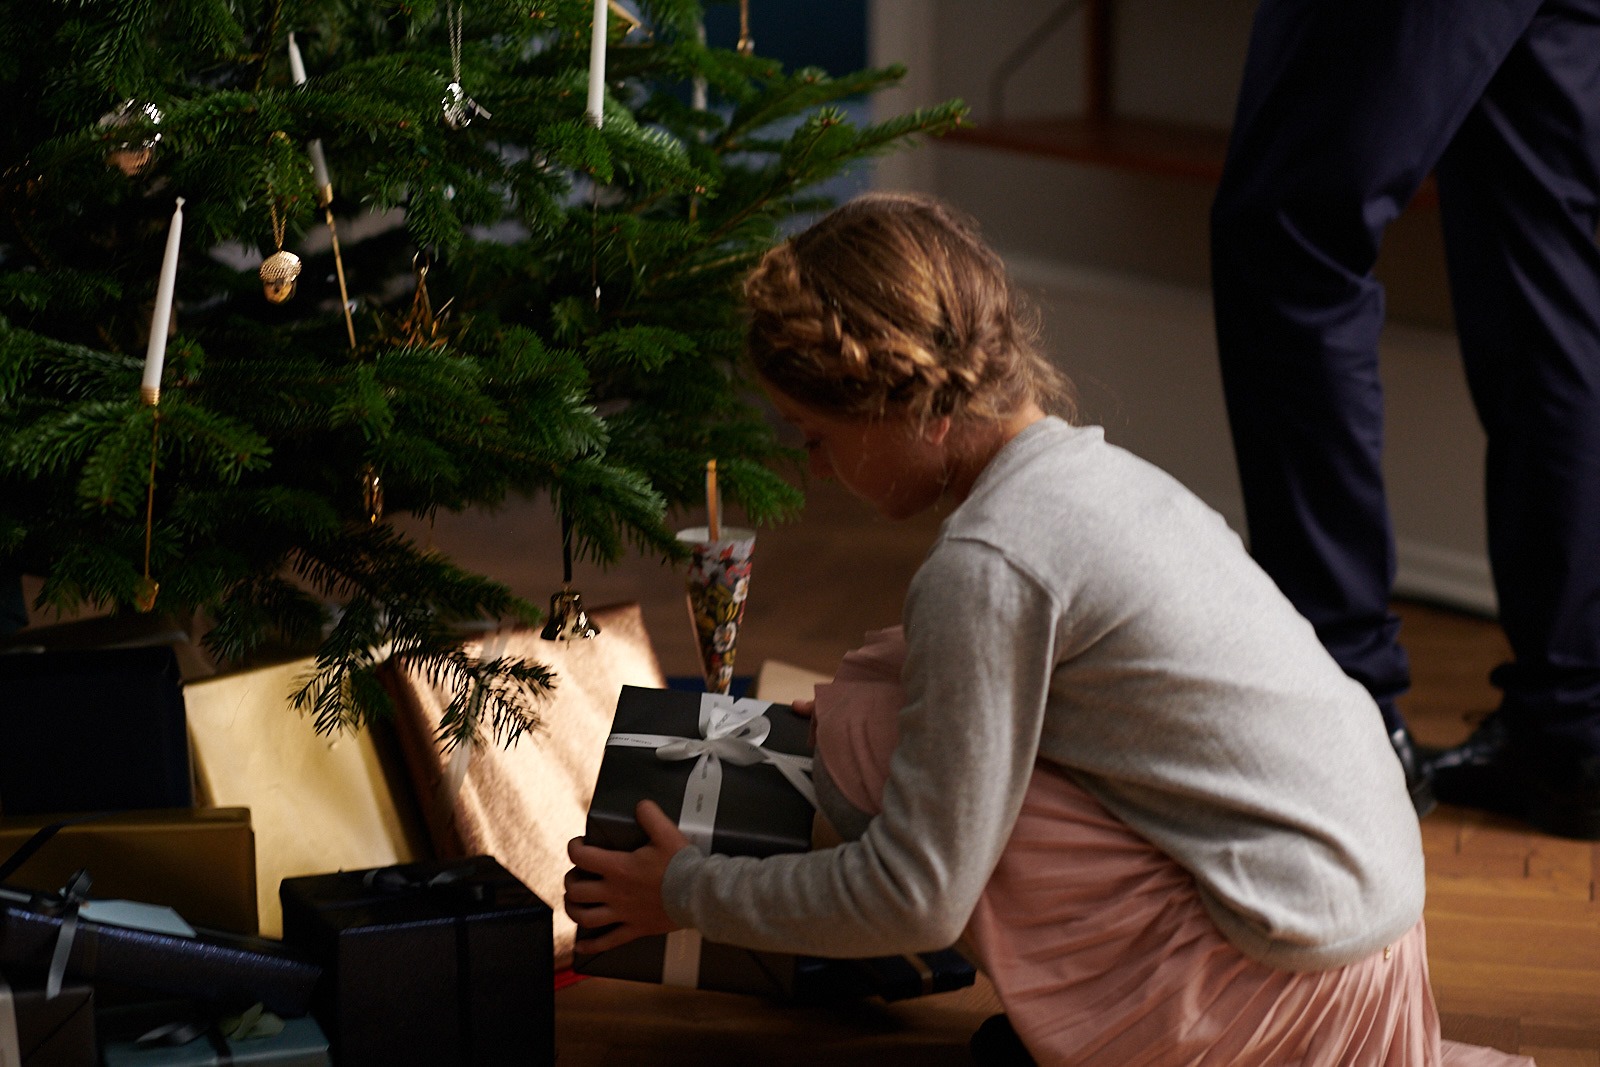 時序推移，轉眼已到聖誕歡慶時節，百年丹麥皇室精品喬治傑生推出2019聖誕珍藏系列，以愛、相聚、懷舊等北歐最受歡迎的聖誕符號元素，融合現代與簡約的設計，透過非凡的工藝創作出精緻細膩的生活裝飾藝術品，在這充滿歡樂笑聲與溫馨團聚的佳節時刻，為所愛之人準備愛的獻禮，分享這一年的美好。